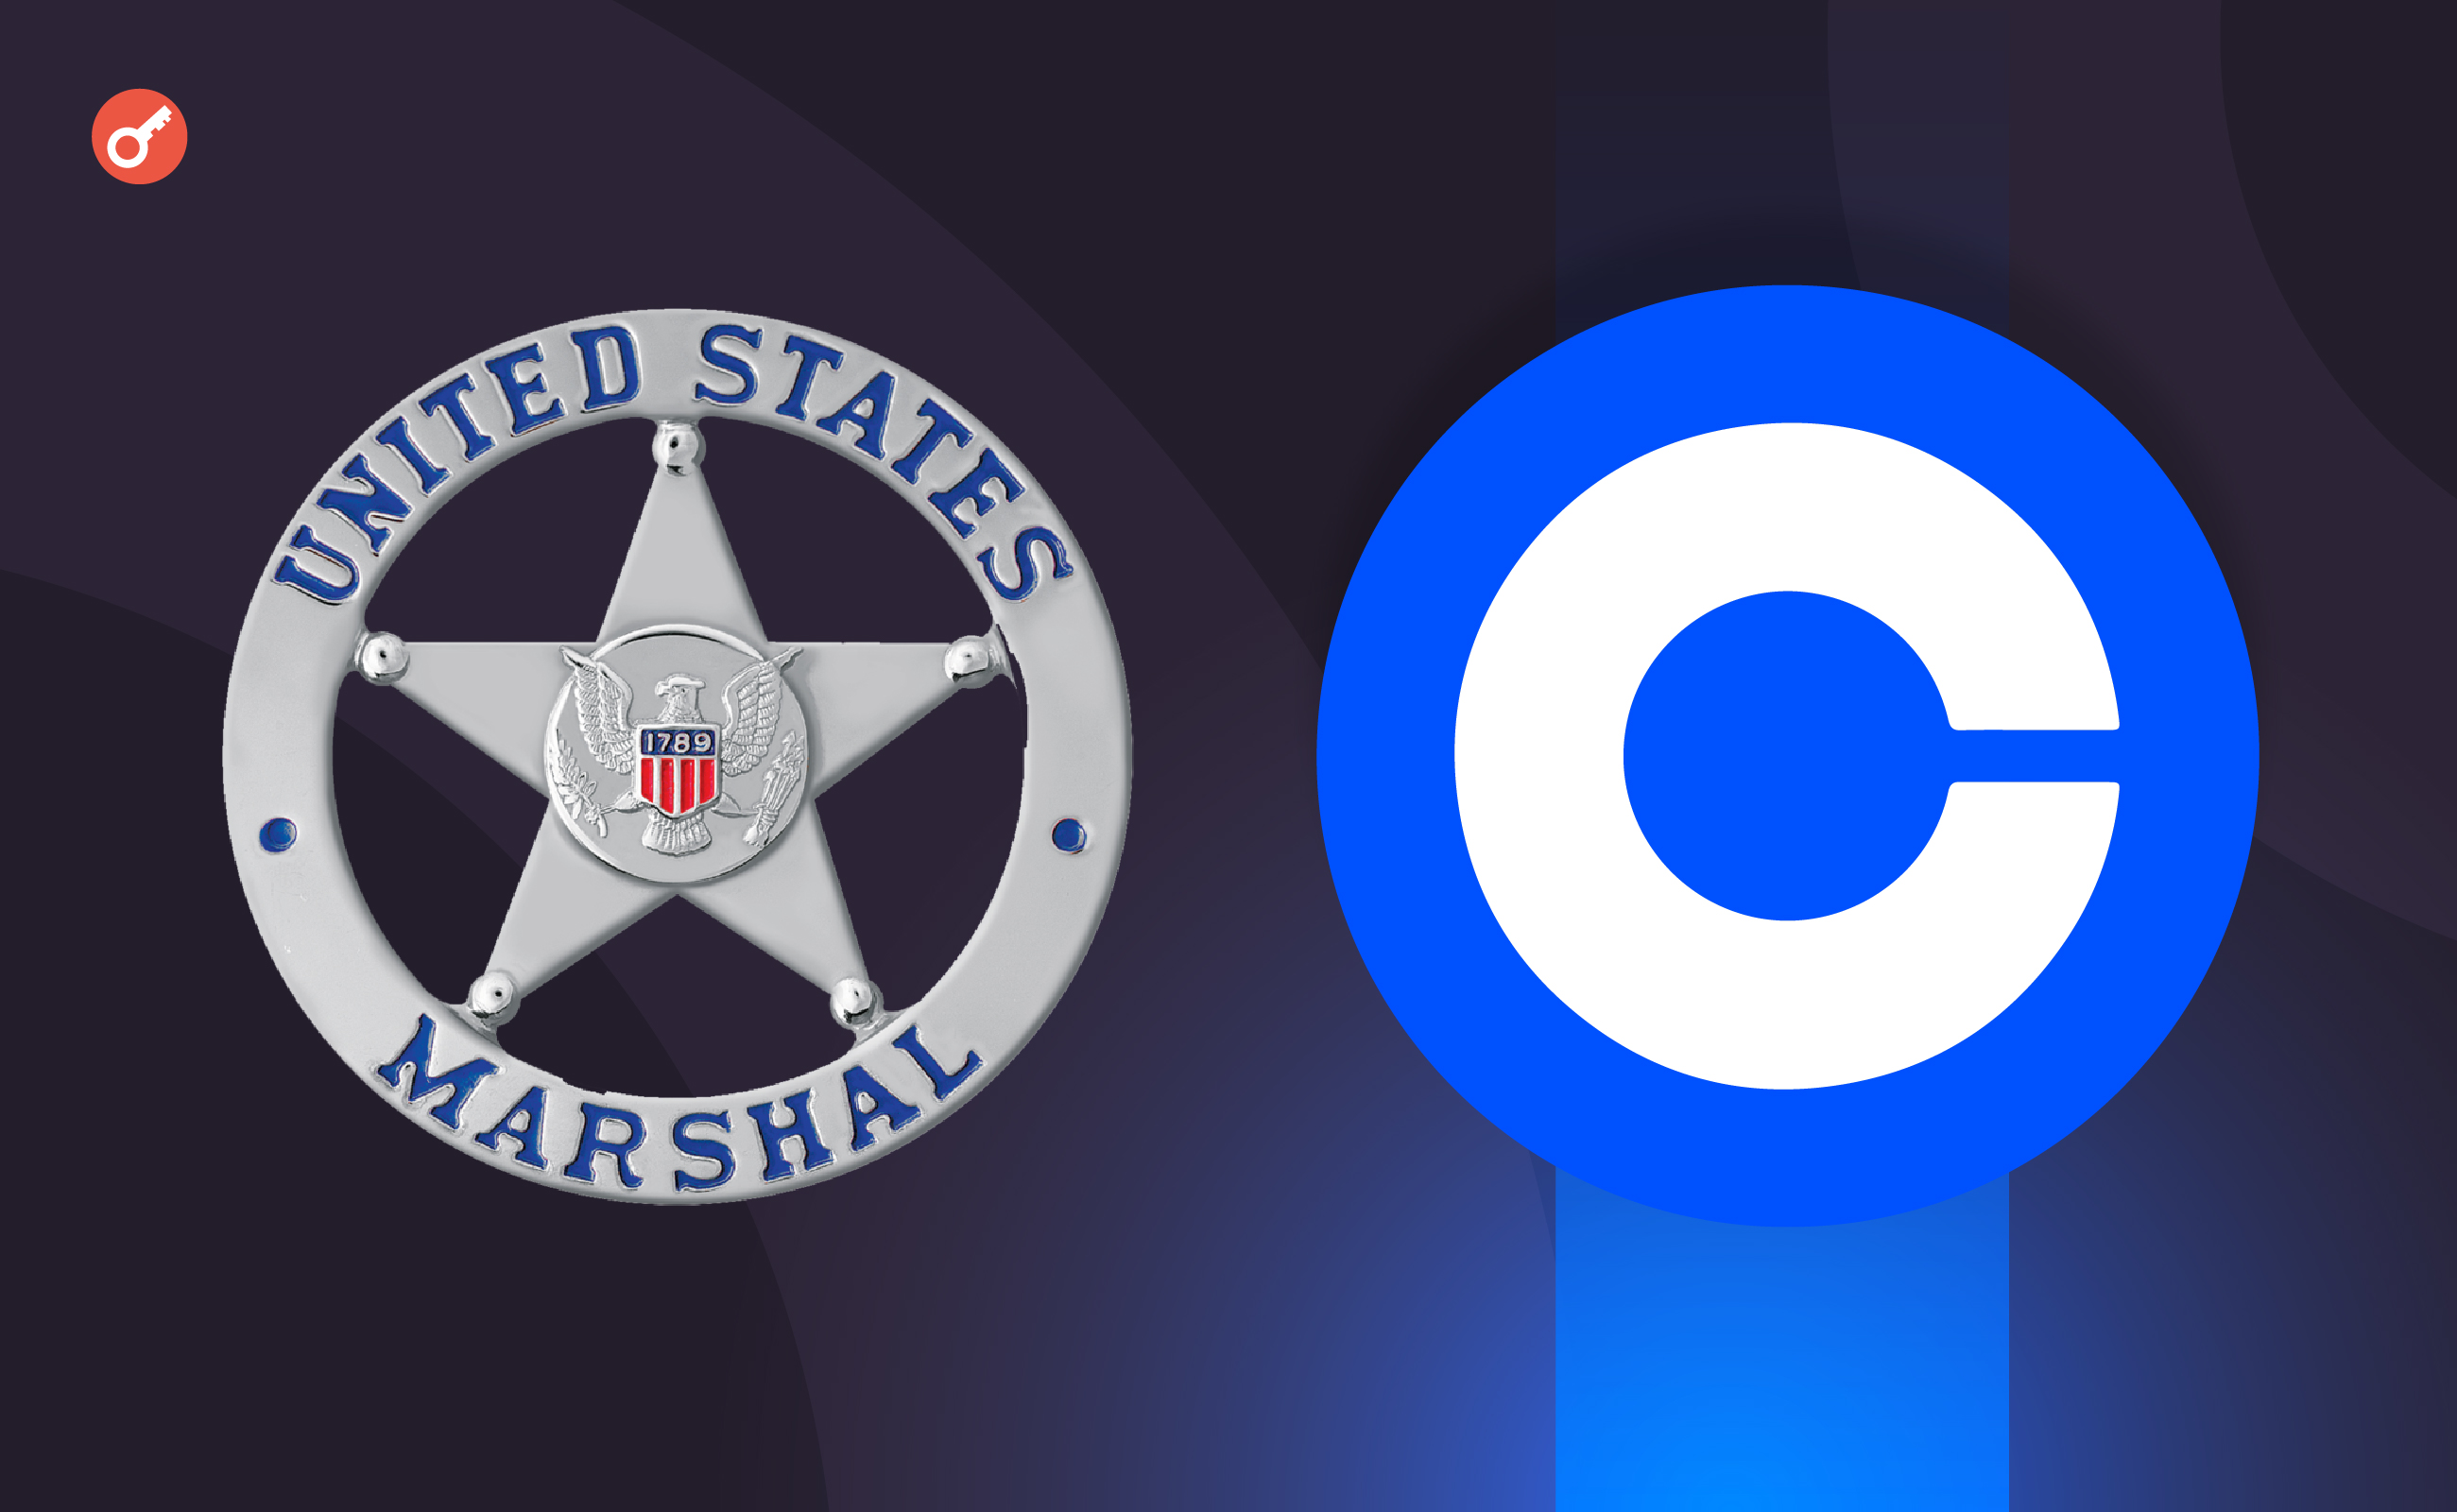 Служба маршалов США выбрала Coinbase для предоставления услуг по торговле цифровыми активами. Заглавный коллаж новости.